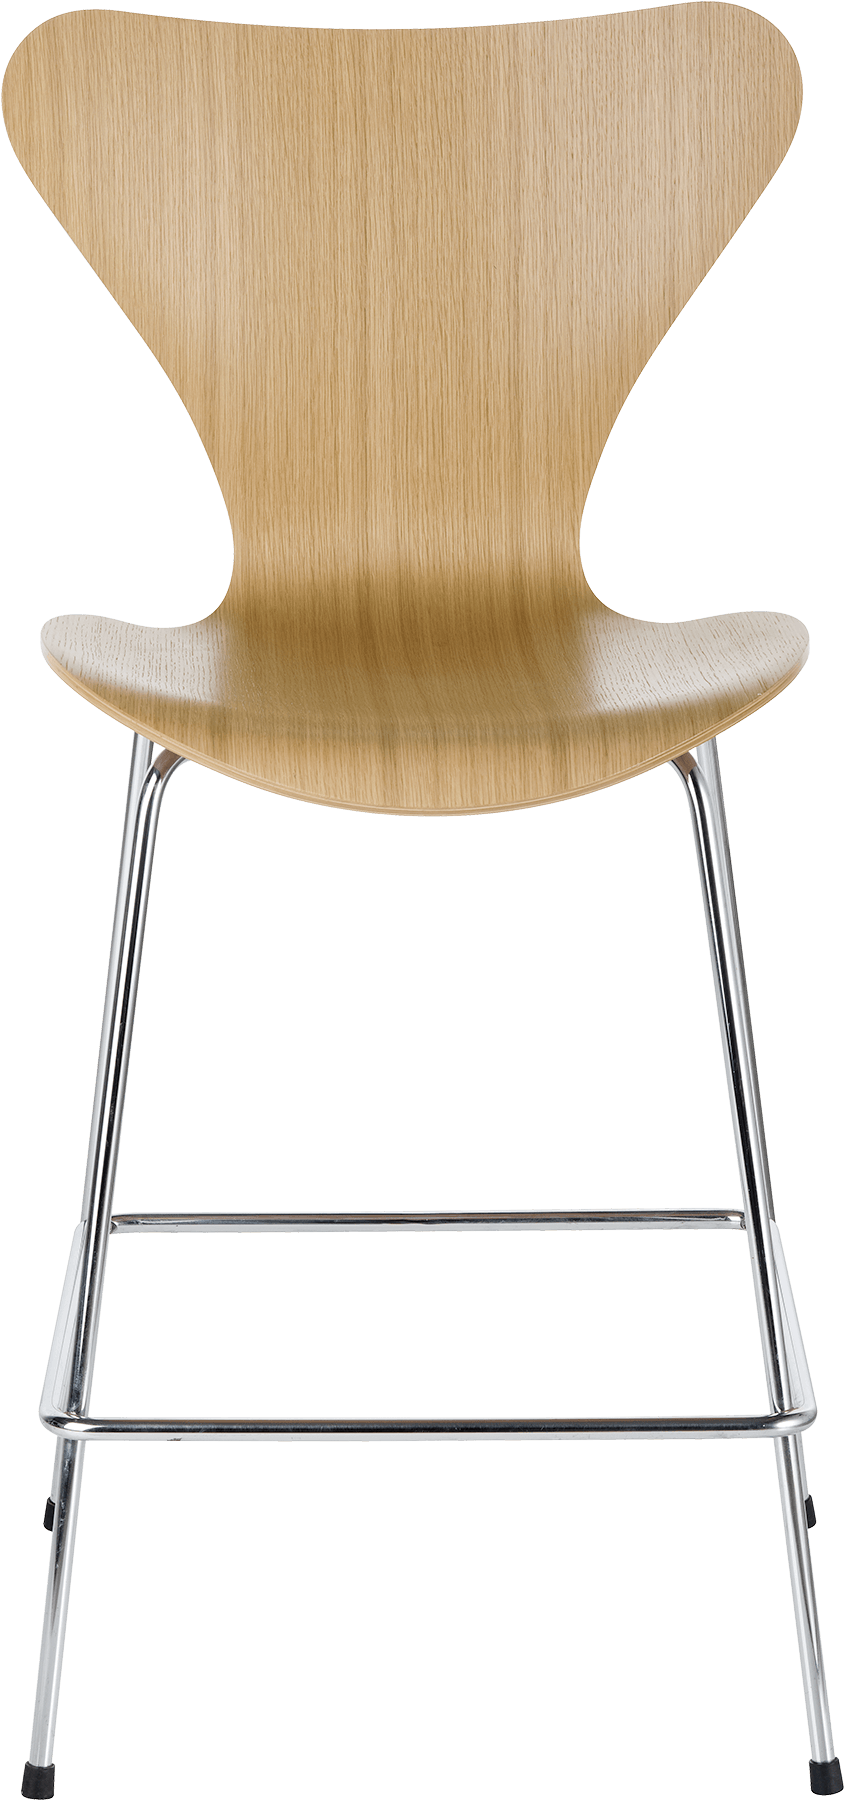 Series 7 Chair Arne Jacobsen Elm Bar Stool - Fritz Hansen Series 7 Stool (1600x1840), Png Download